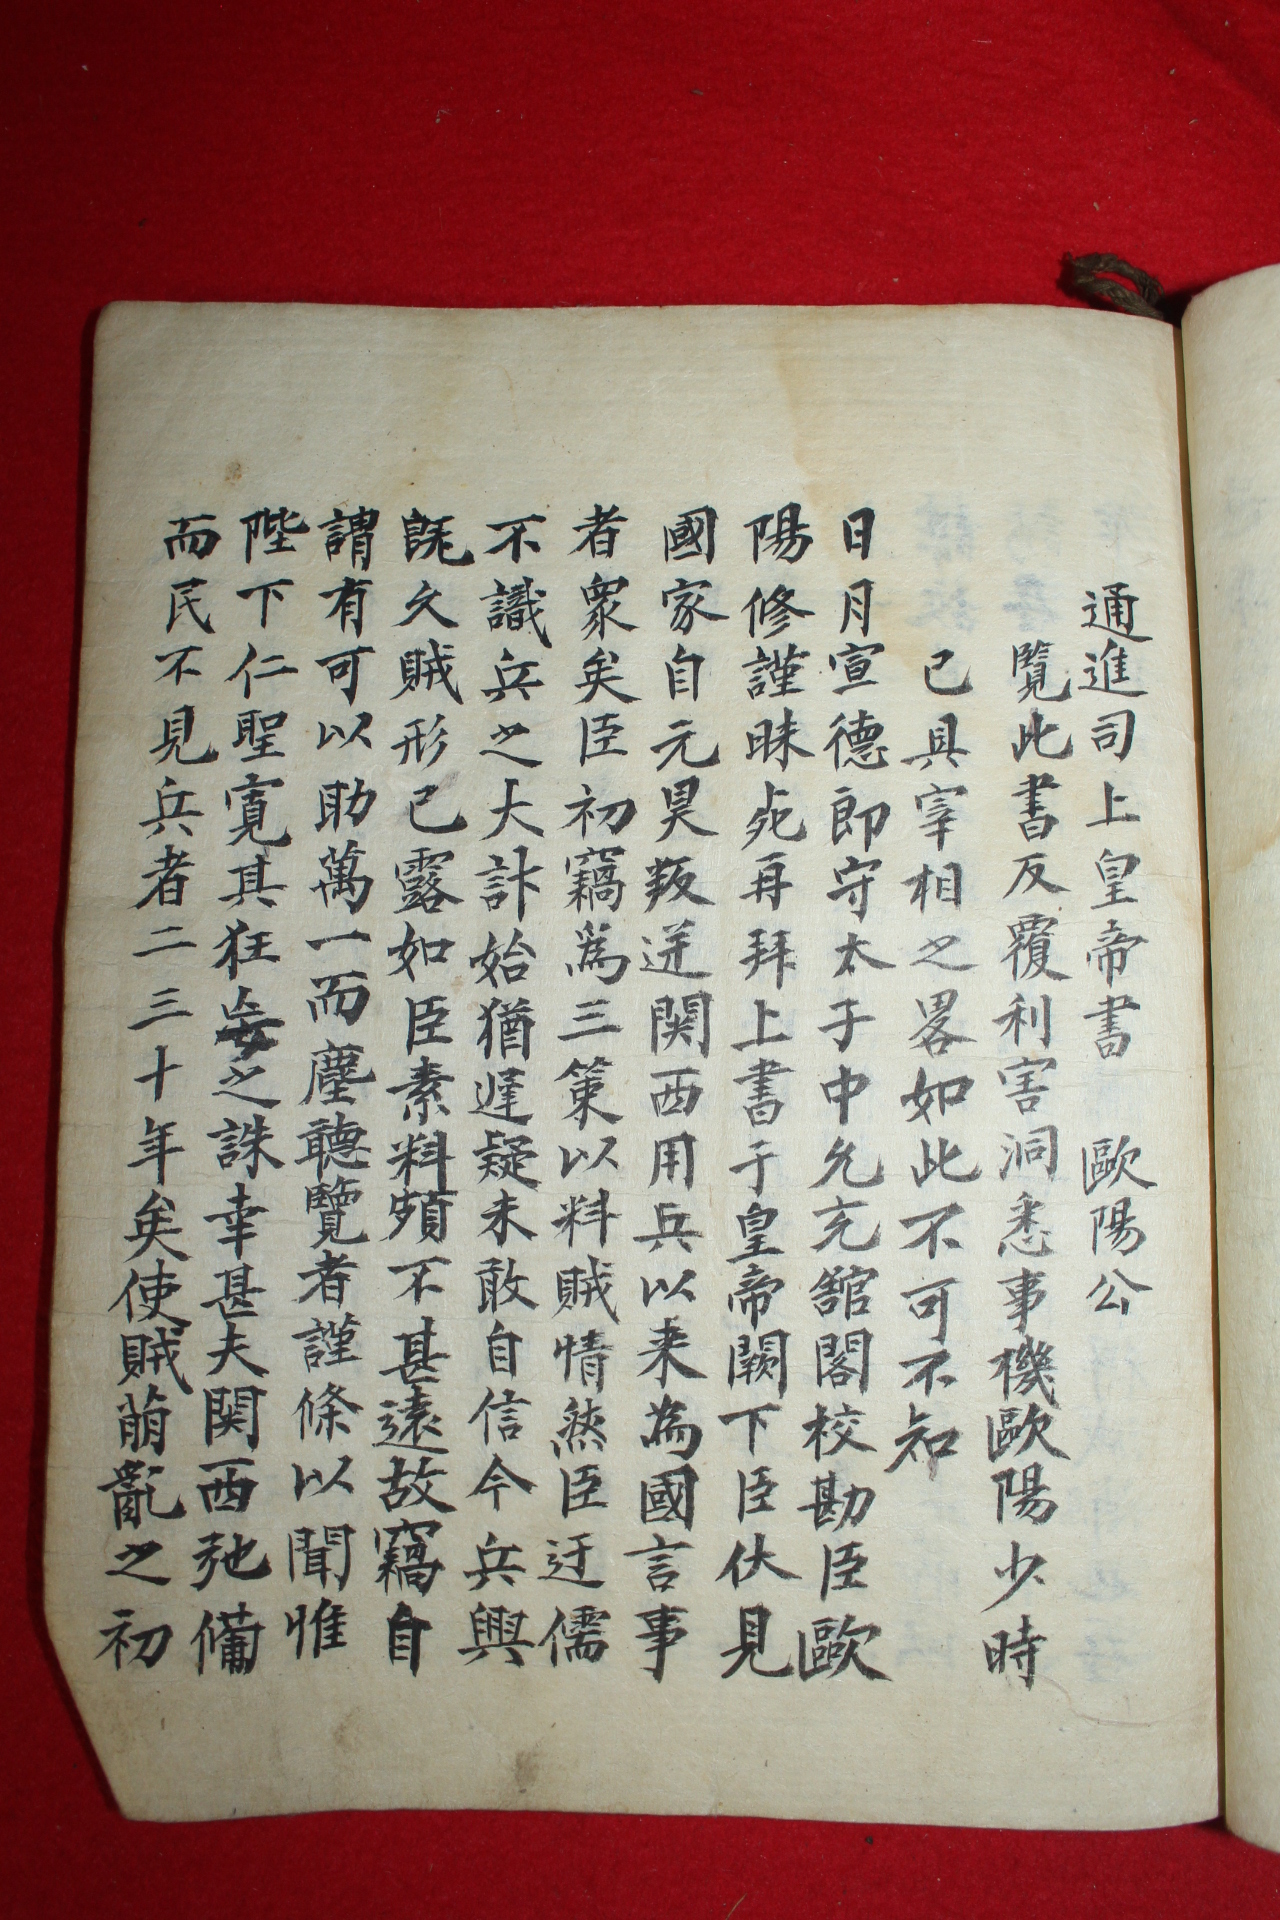 조선시대 필사본 제갈공명 출사표 고문초선(古文抄選)